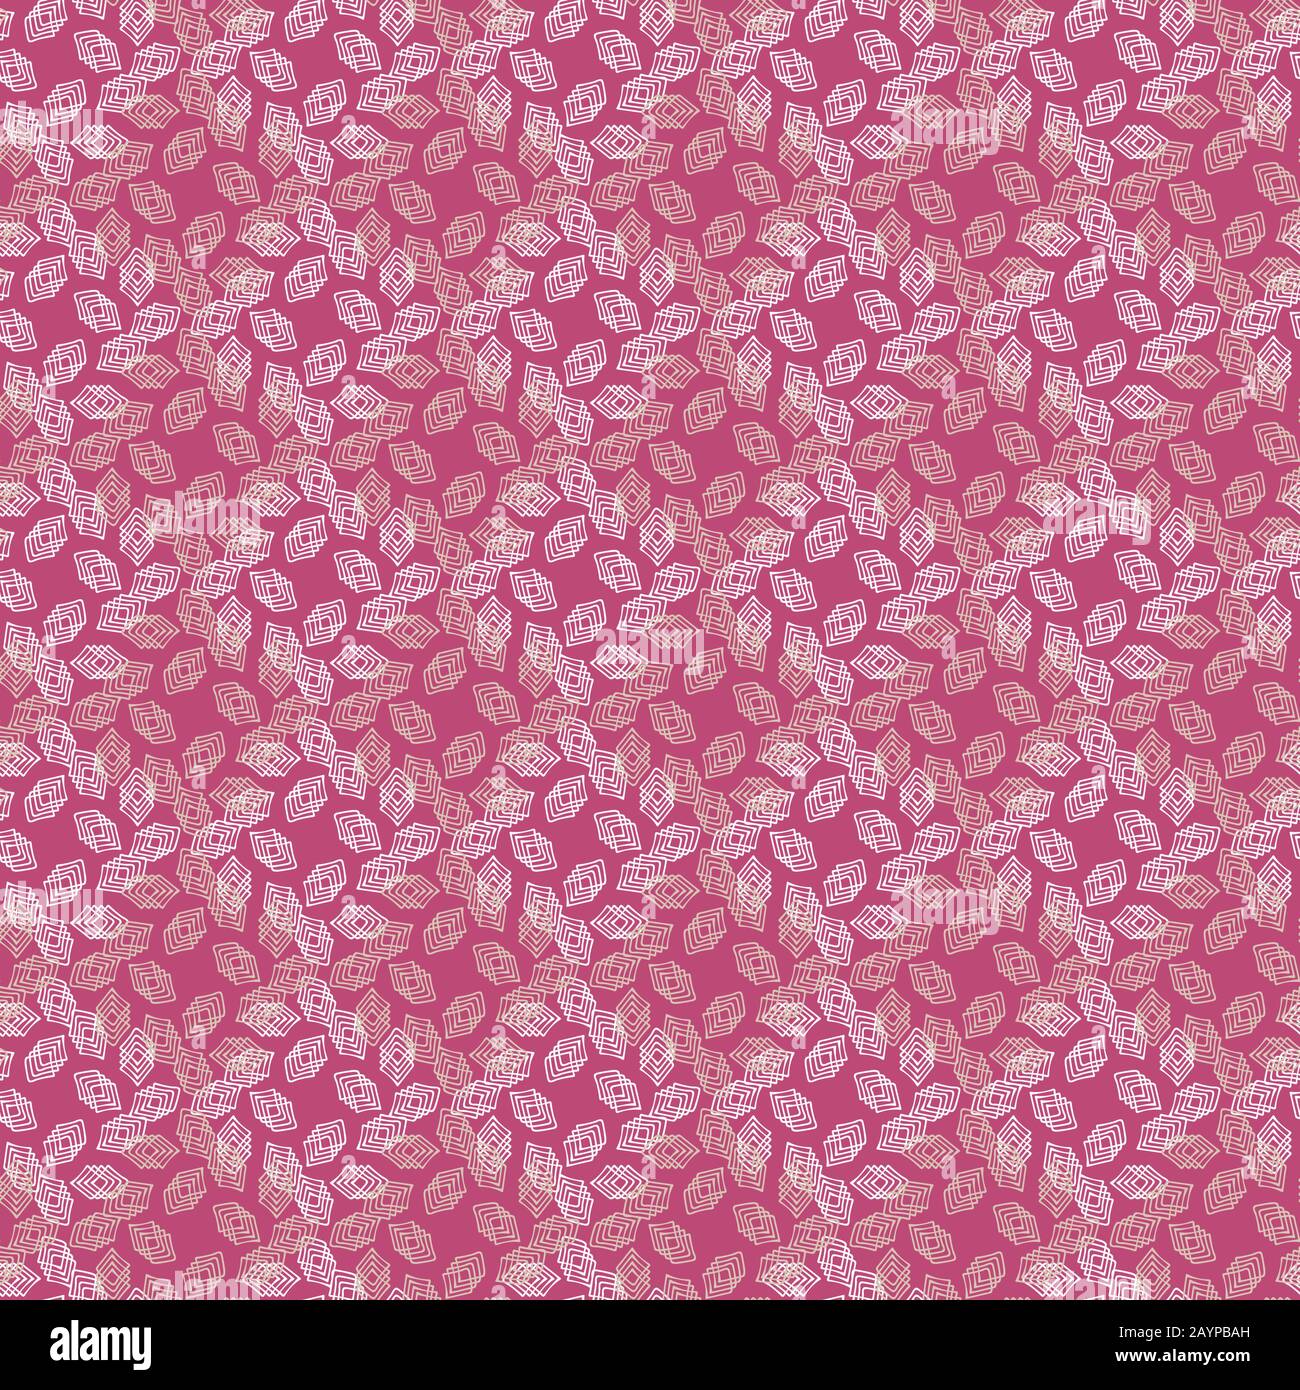 disegno vettoriale geometrico astratto senza cuciture con forme di diamante chiaro su sfondo rosa vibrante Illustrazione Vettoriale